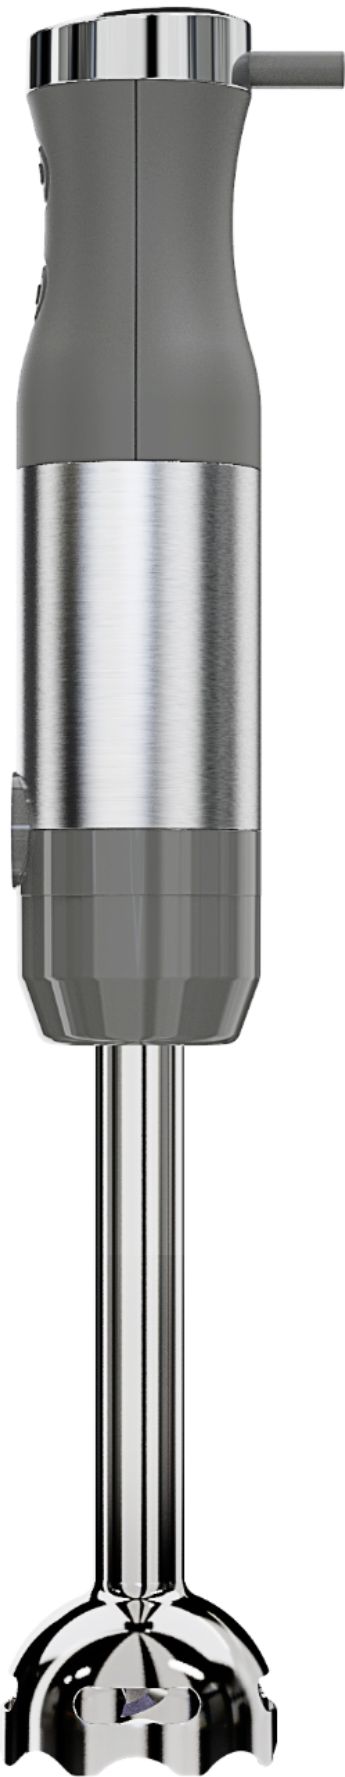 KitchenAid® 2-Speed Immersion Blender - 8 Shaft